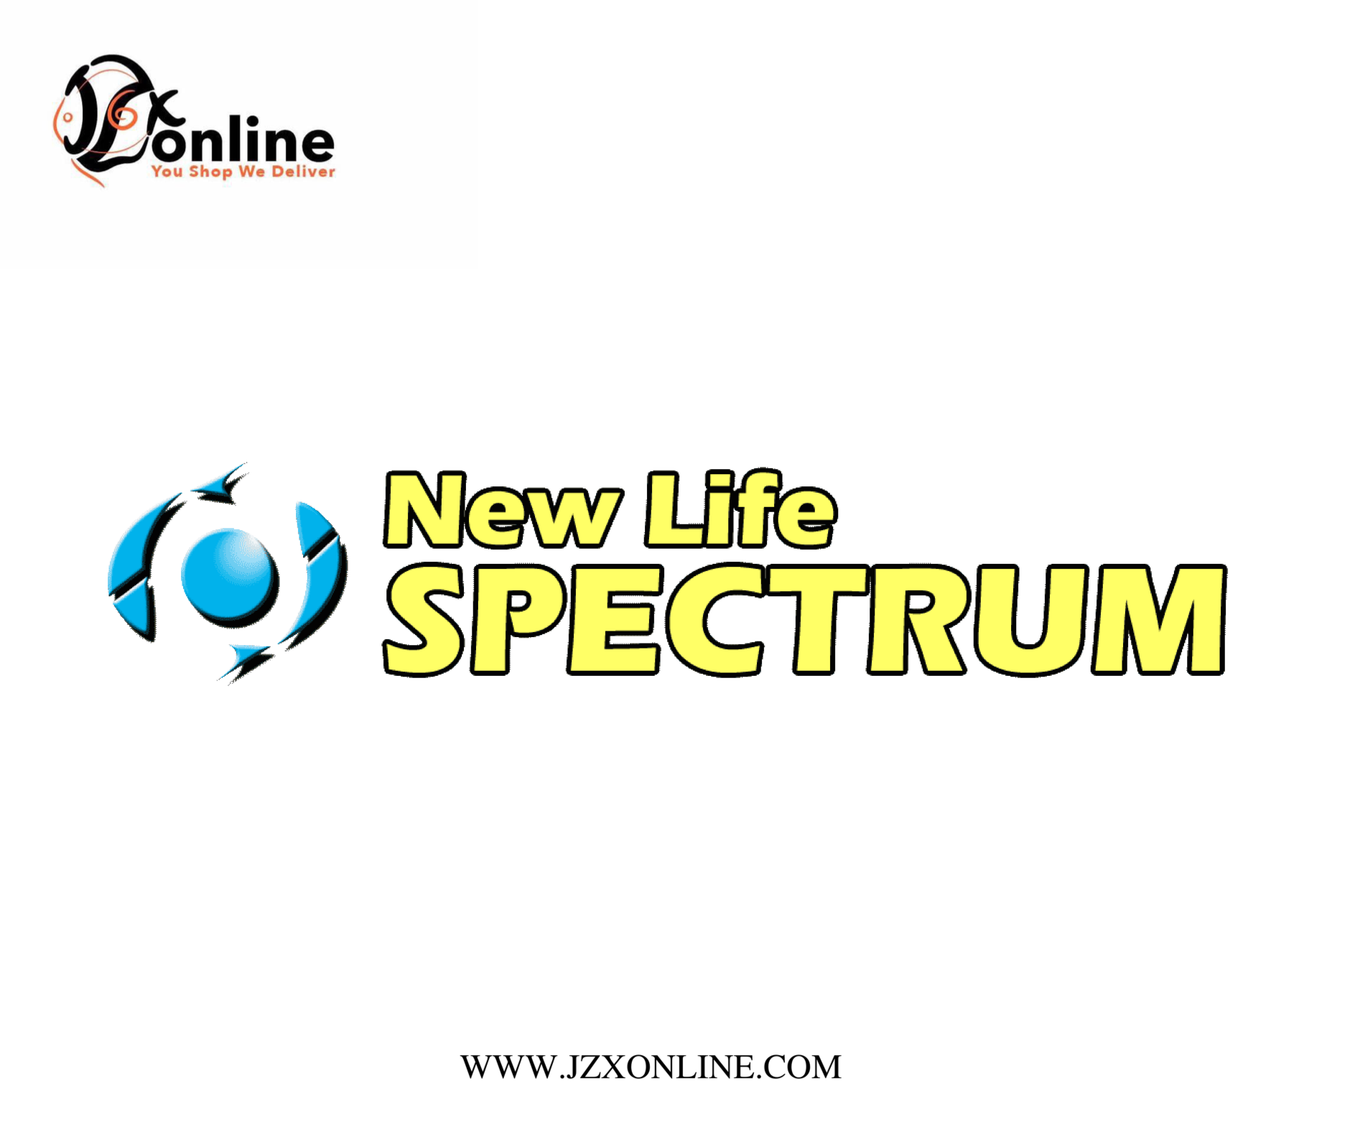 NLS (New Life Spectrum)